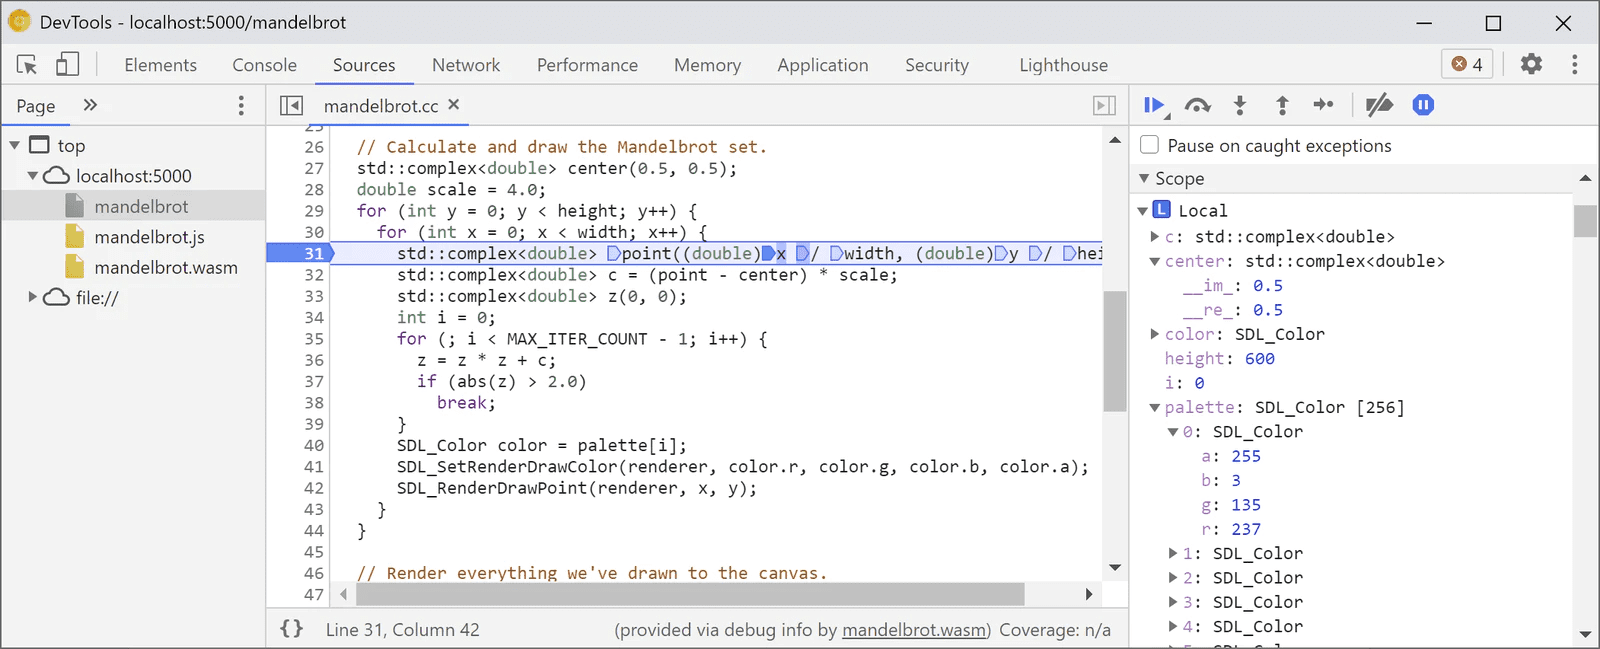 اشکال زدایی WebAssembly در DevTools که نقاط شکست را در کد نشان می دهد تا بتوان از آن عبور کرد.